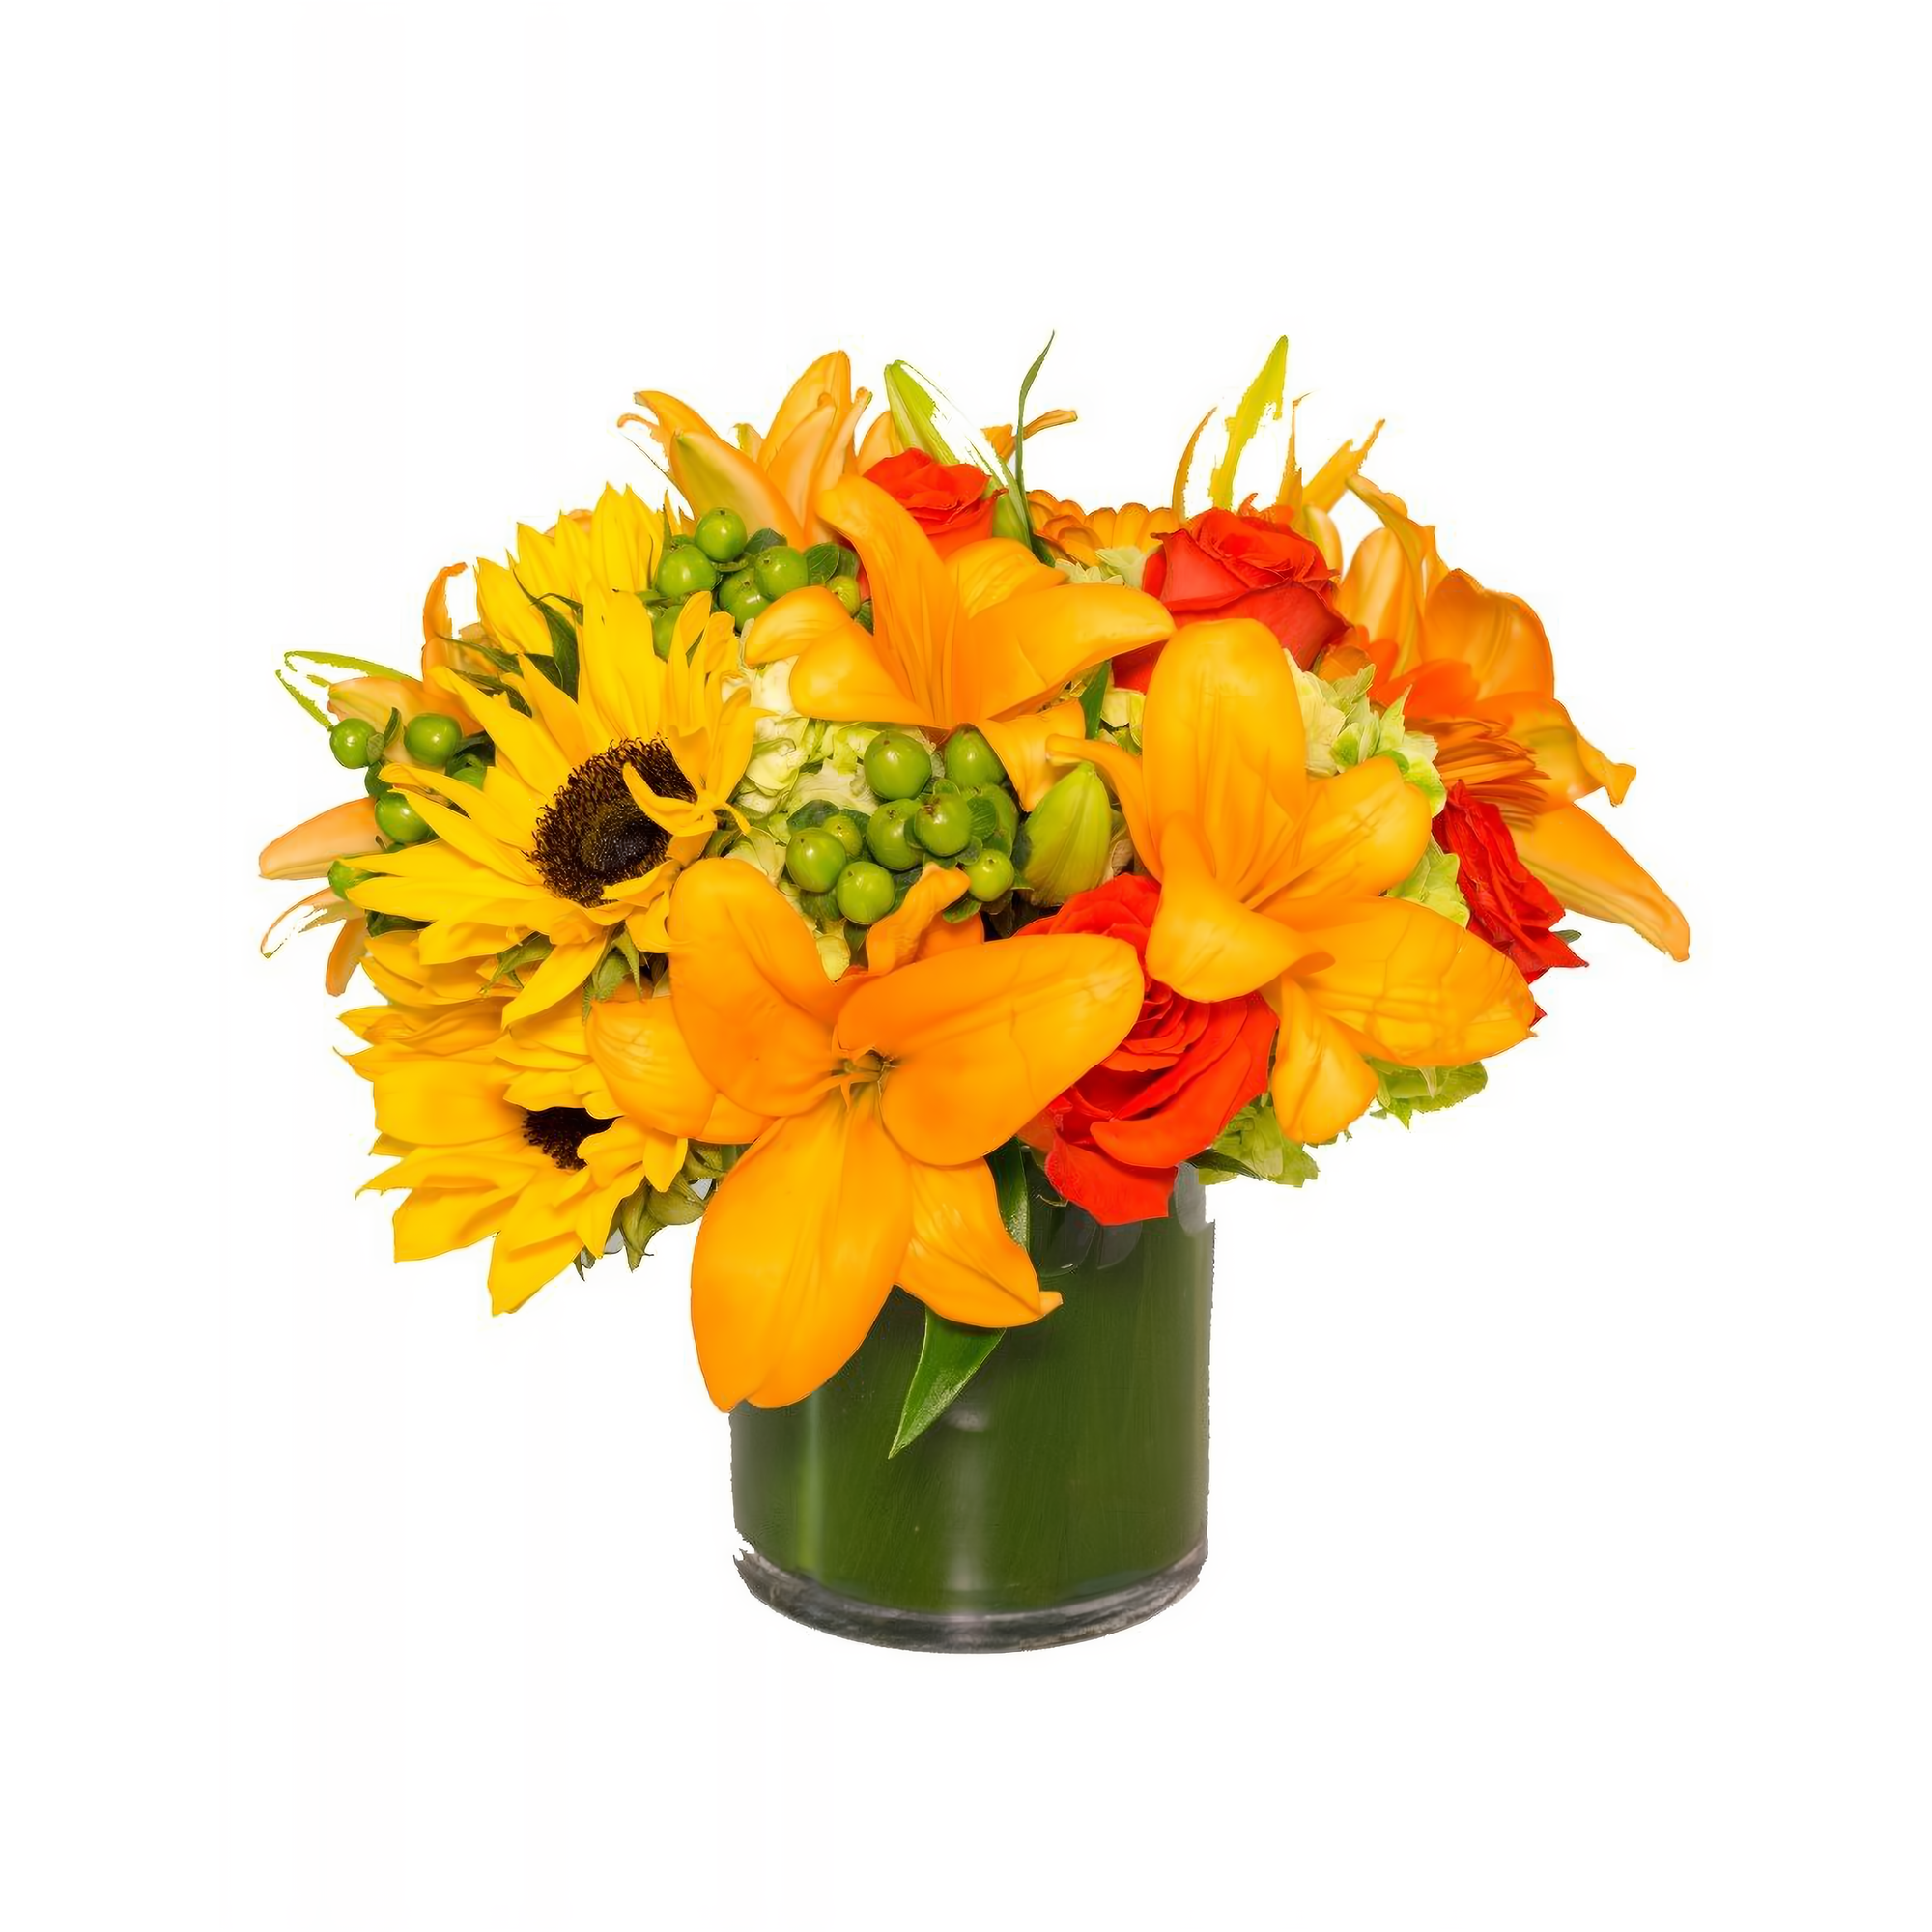 Manhattan Flower Delivery - Sunburst Bouquet - Occasions > Anniversary